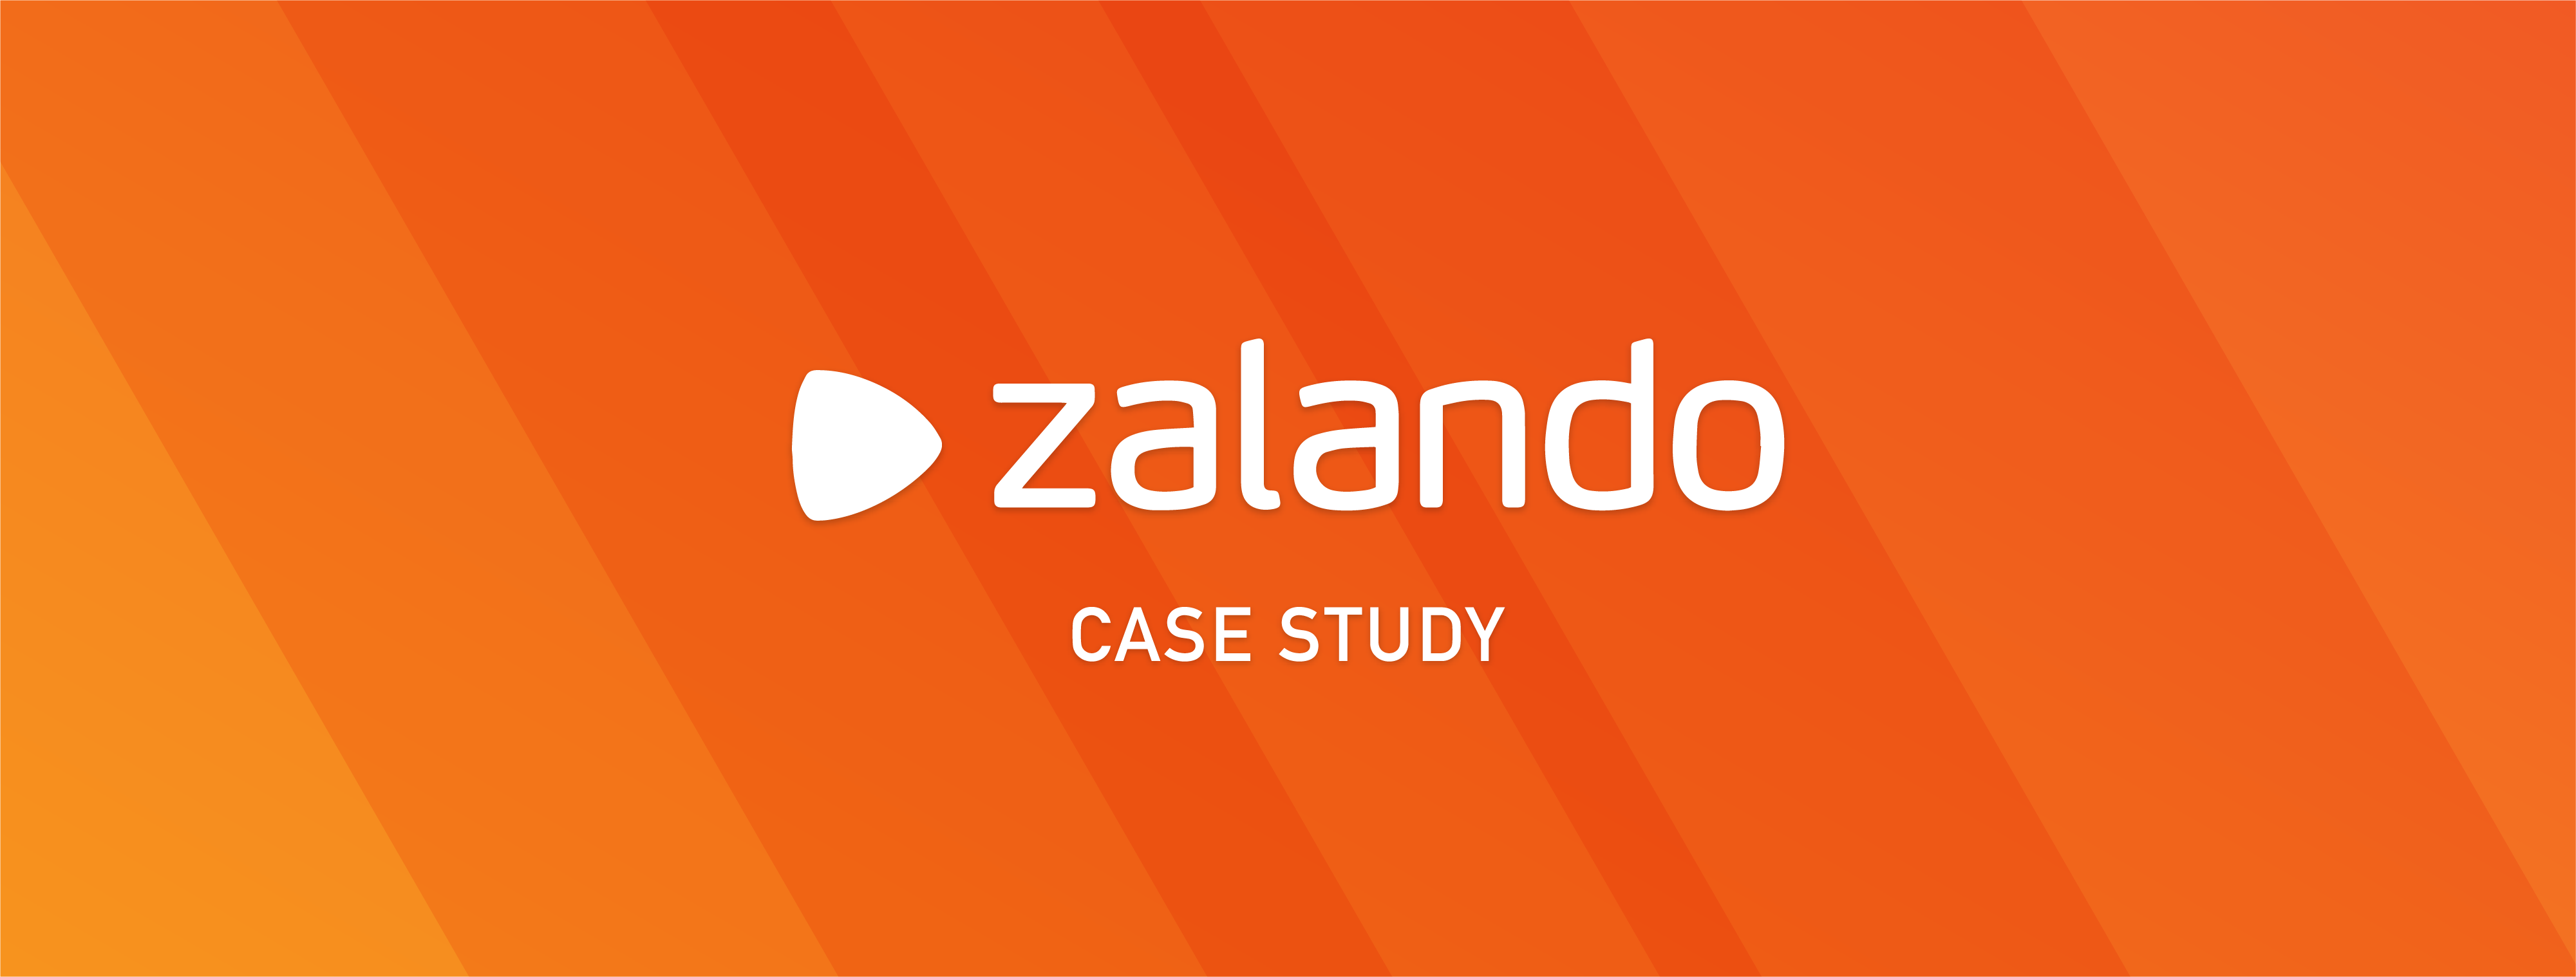 zalando aws case study